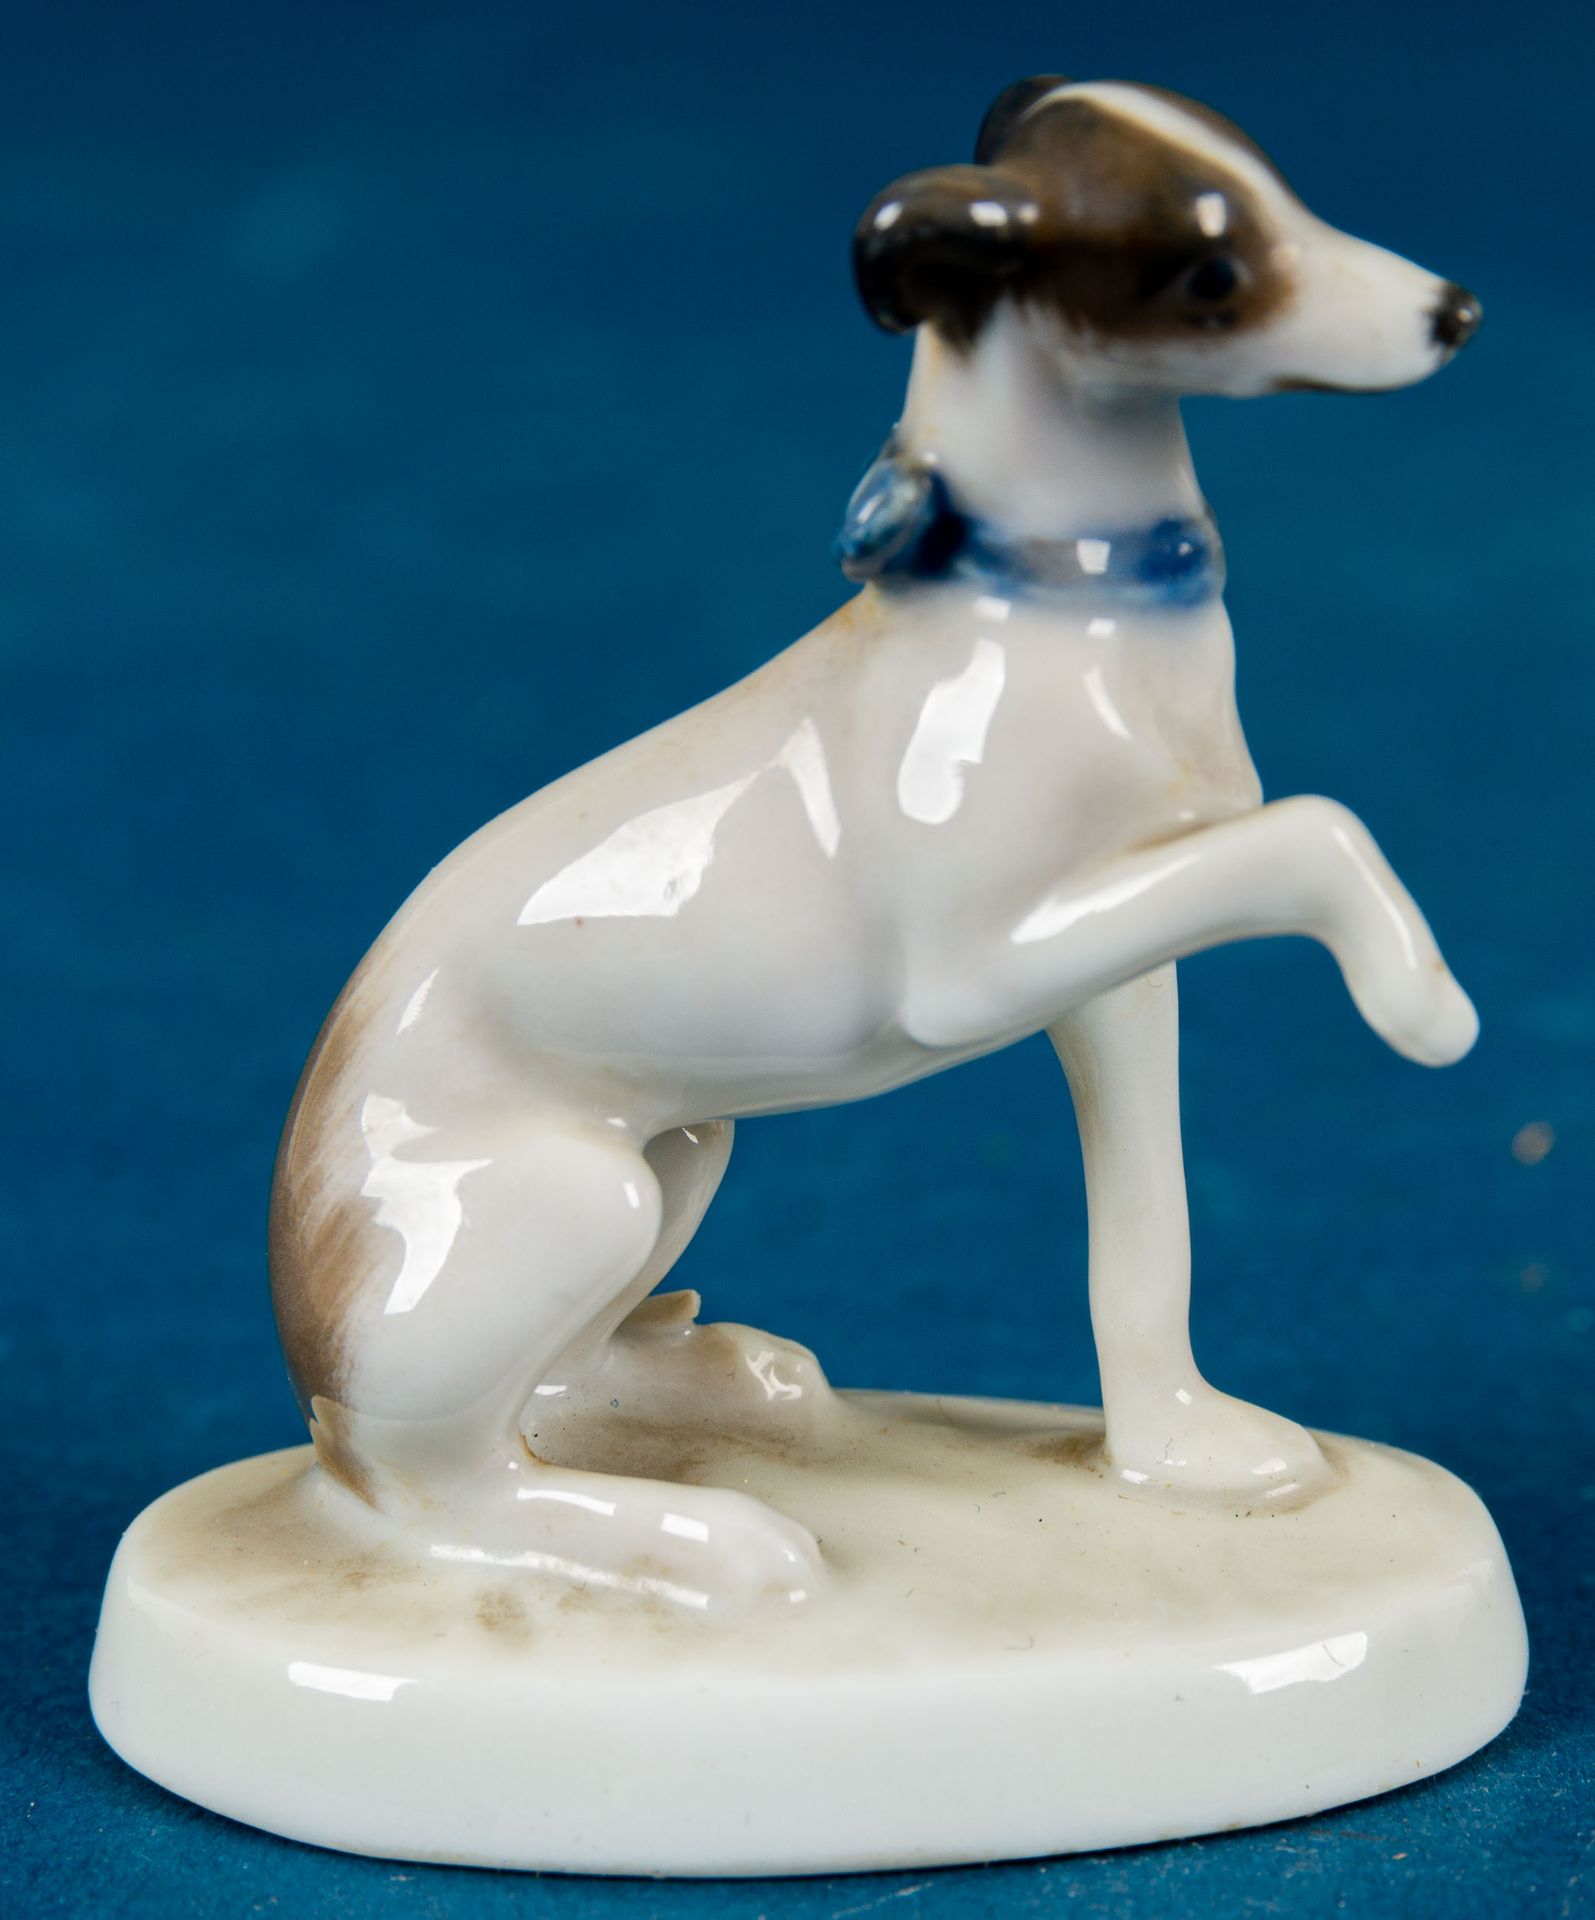 "Terrier" der Marke Rosenthal, kleine Porzellanfigur eines jungen Vorstehhundes, das Pfötchen geben